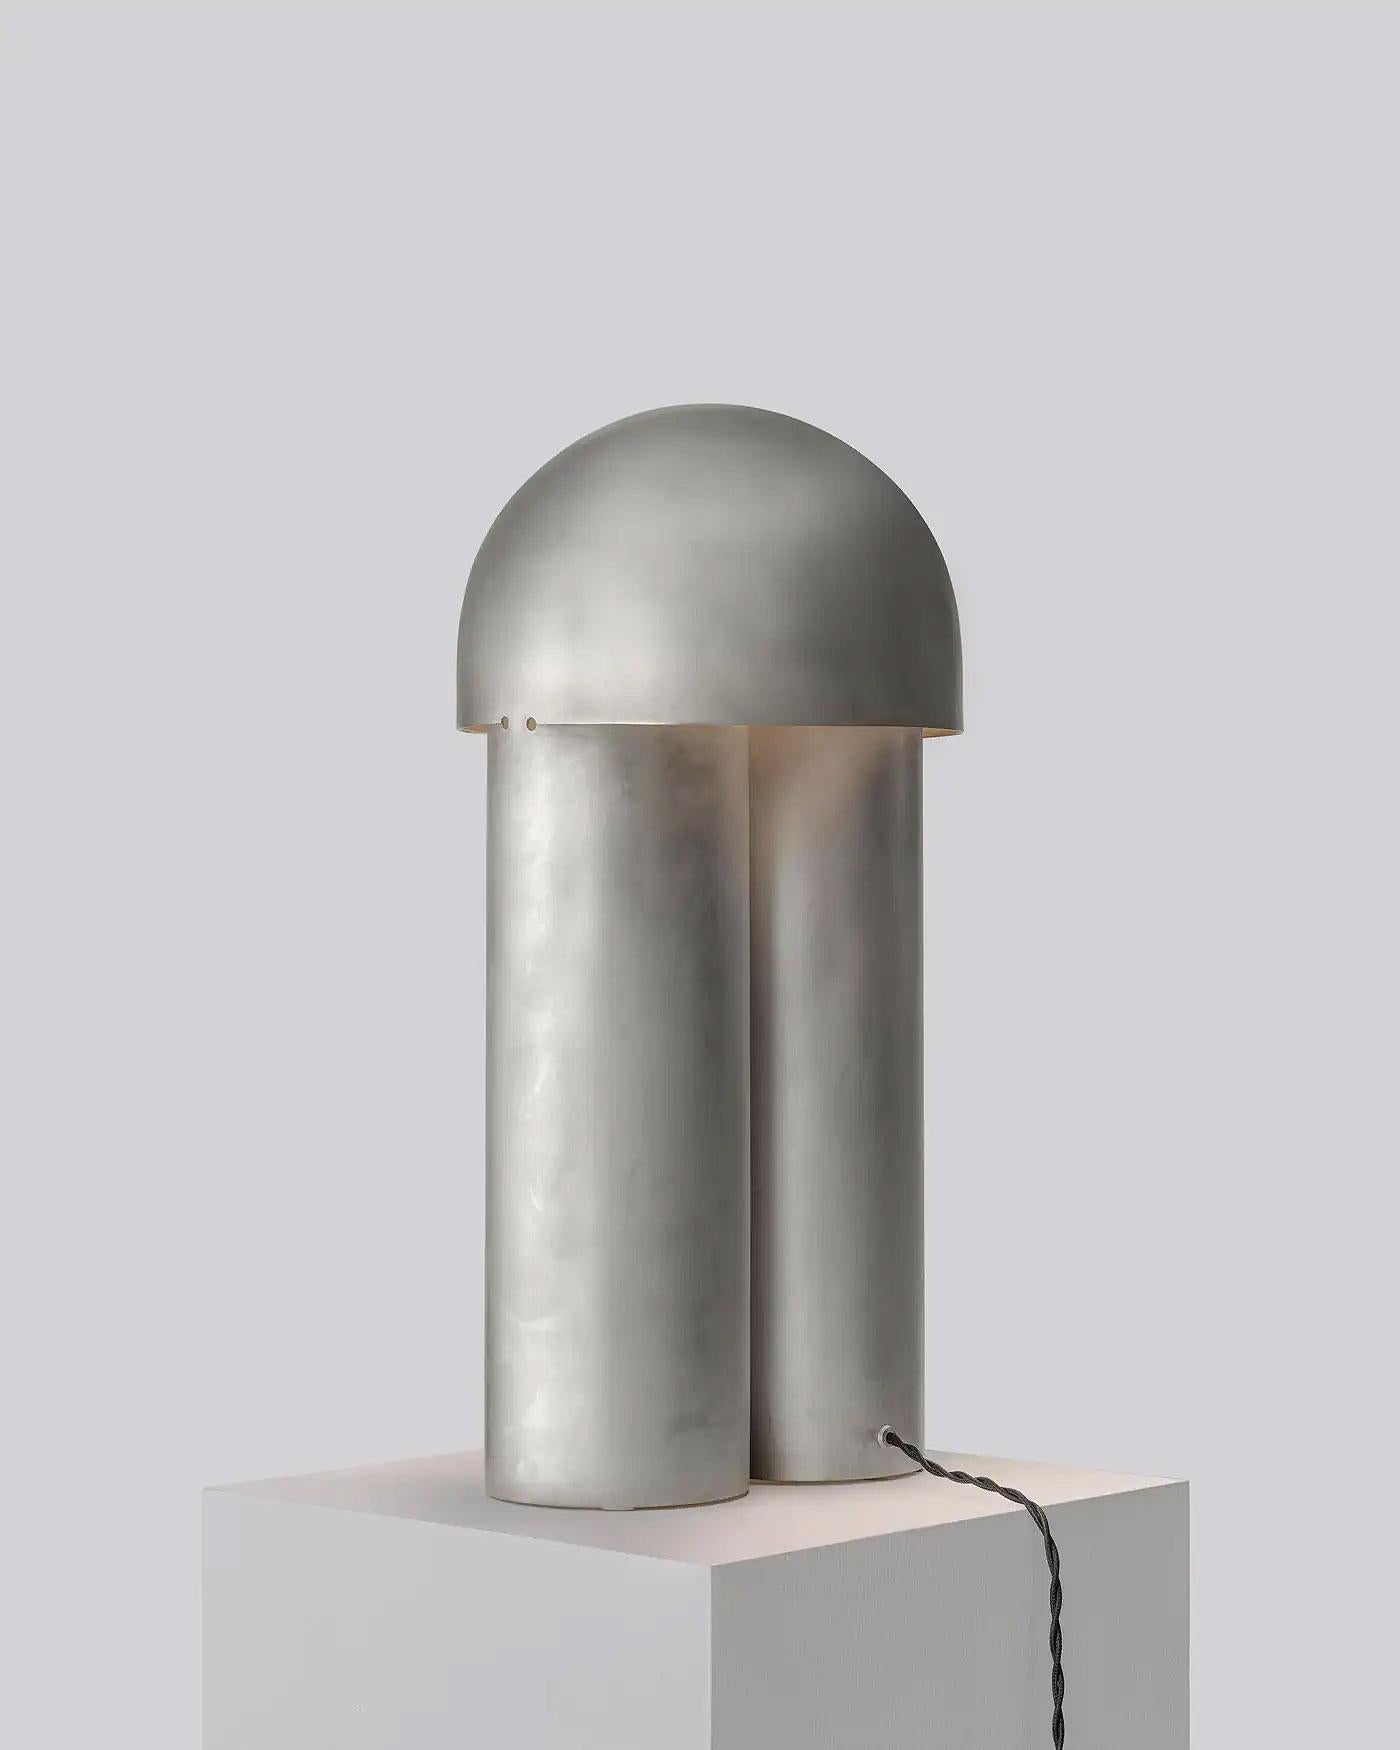 Lampe de table contemporaine sculptée en laiton argenté, Monolith Large by Paul Matter

La lampe Monolith est un exercice de réduction. Sculptées à partir d'un seul corps à l'aide de simples partitions et de plis, la géométrie des lampes, la texture